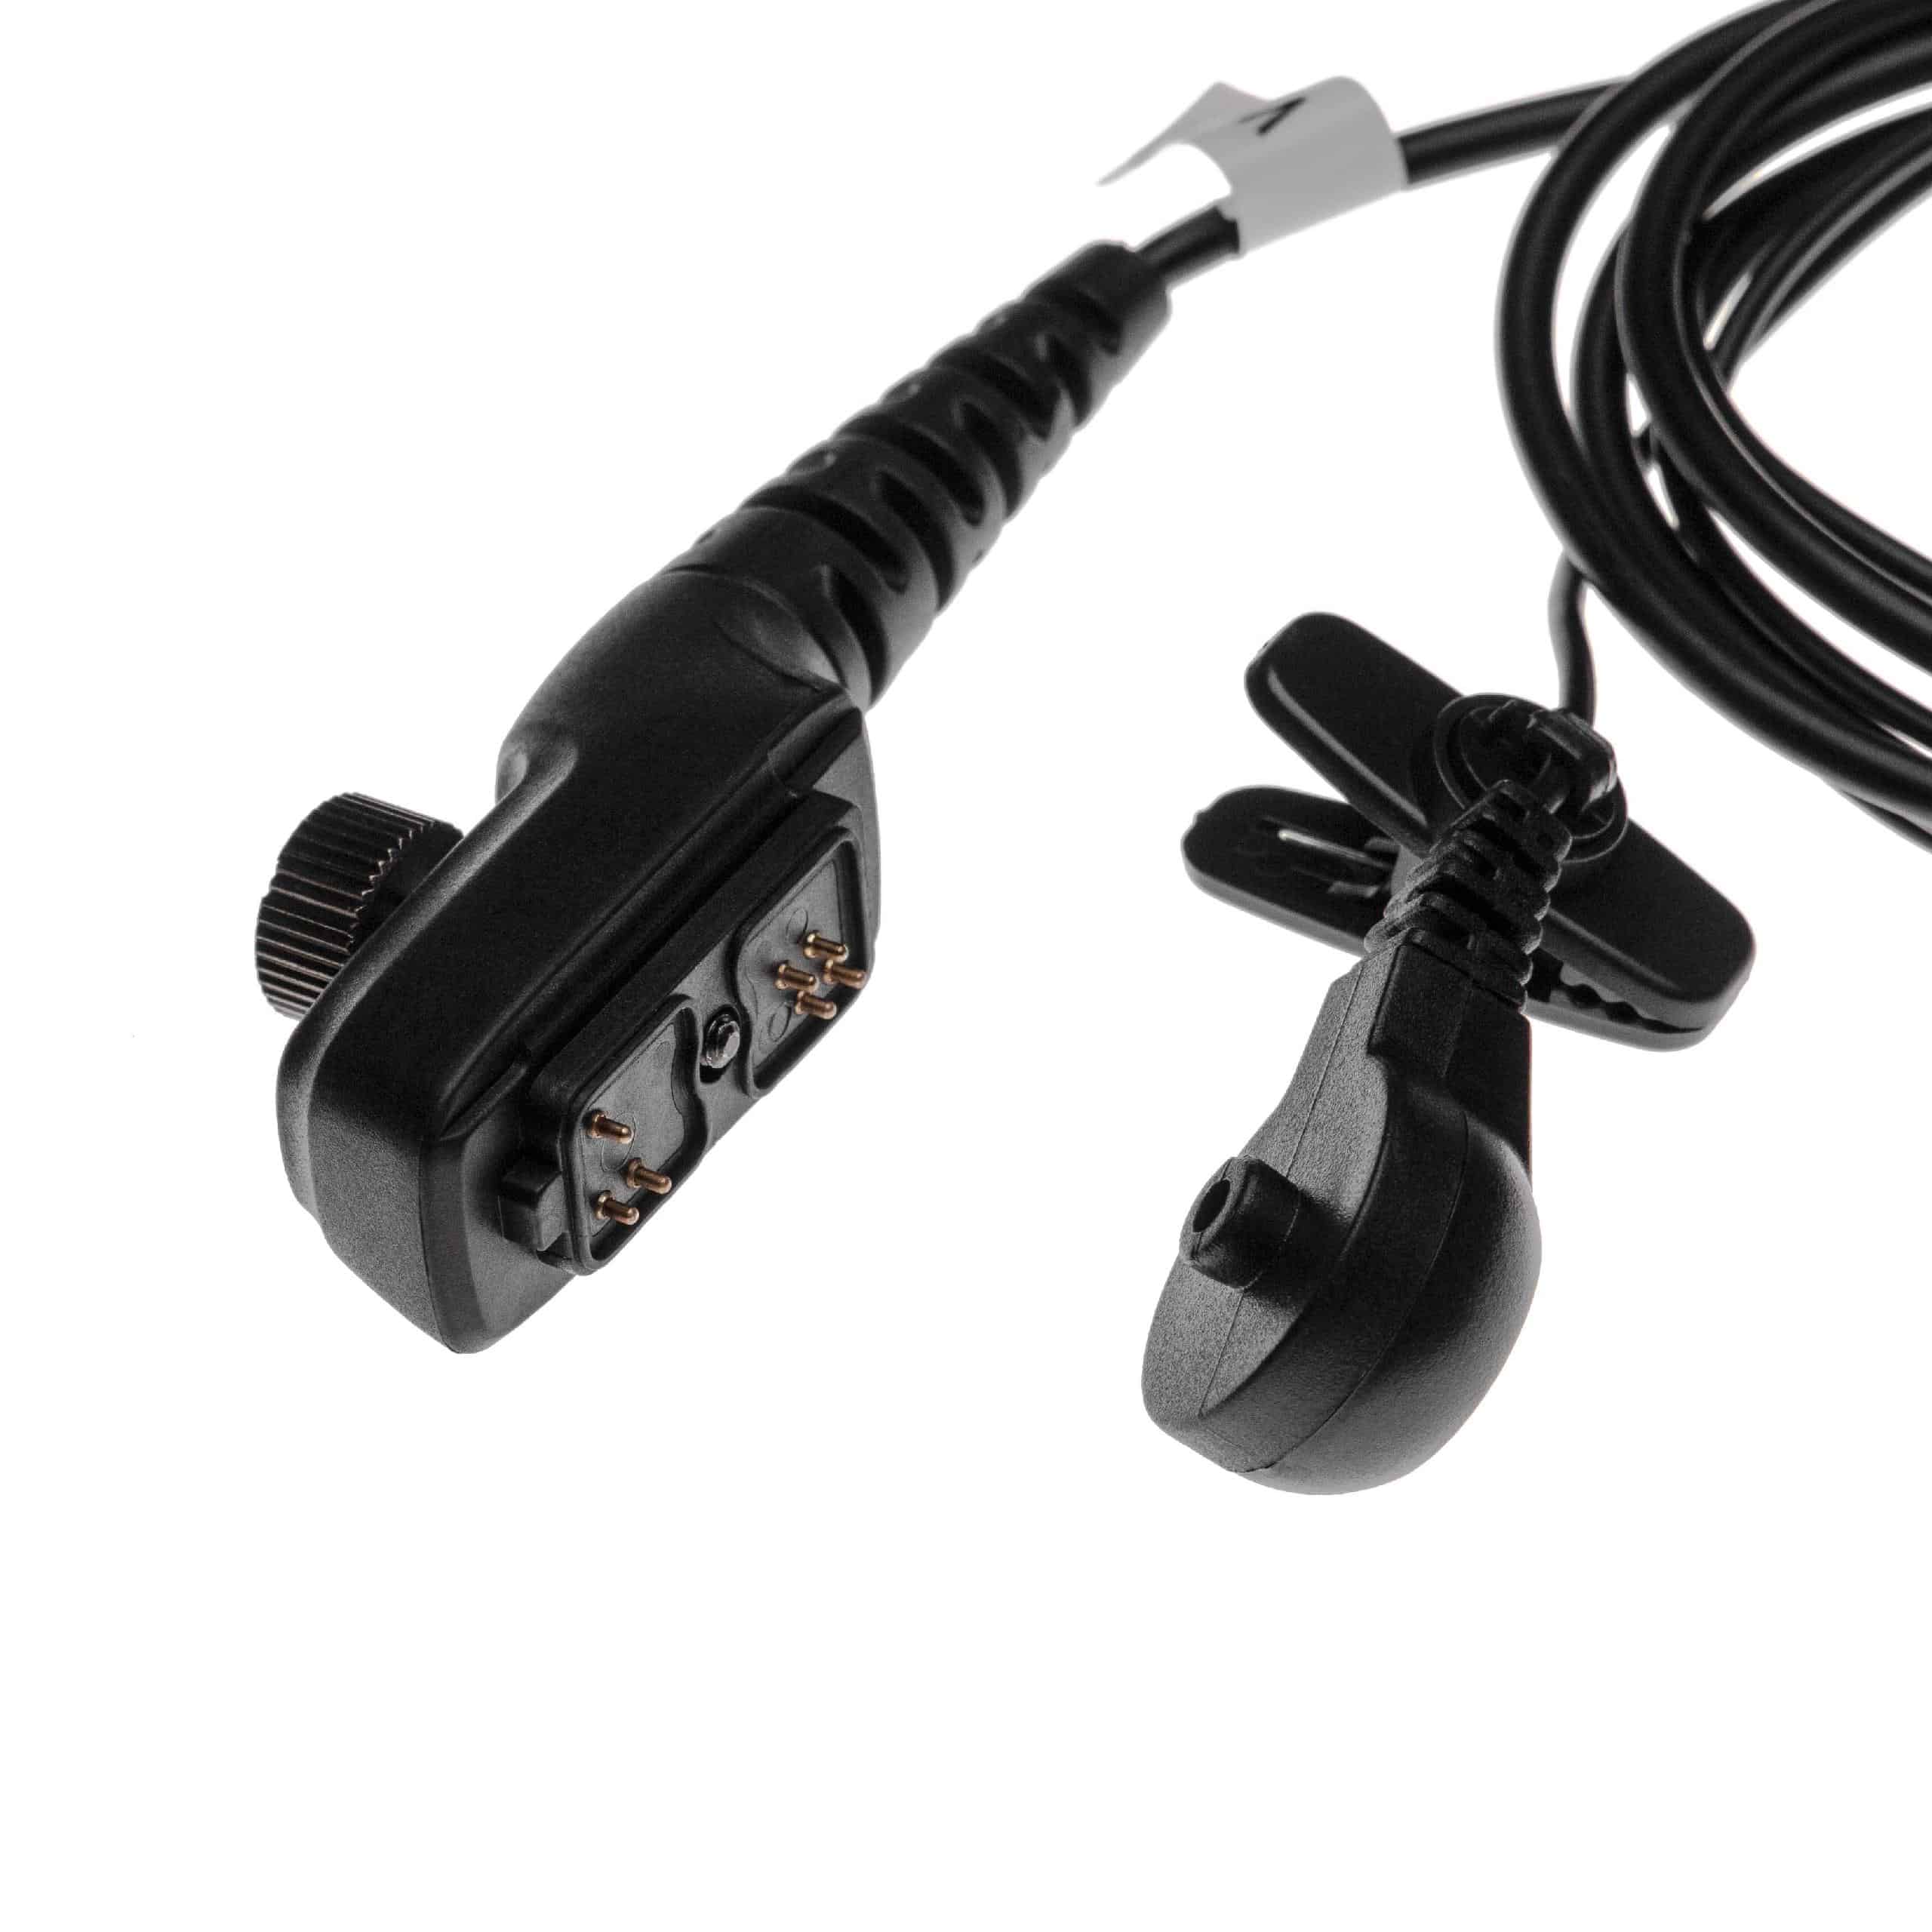 Auriculares para transceptor HYT/Hytera PD700 + micrófono push-to-talk + soporte clip + tubo acústico transpar